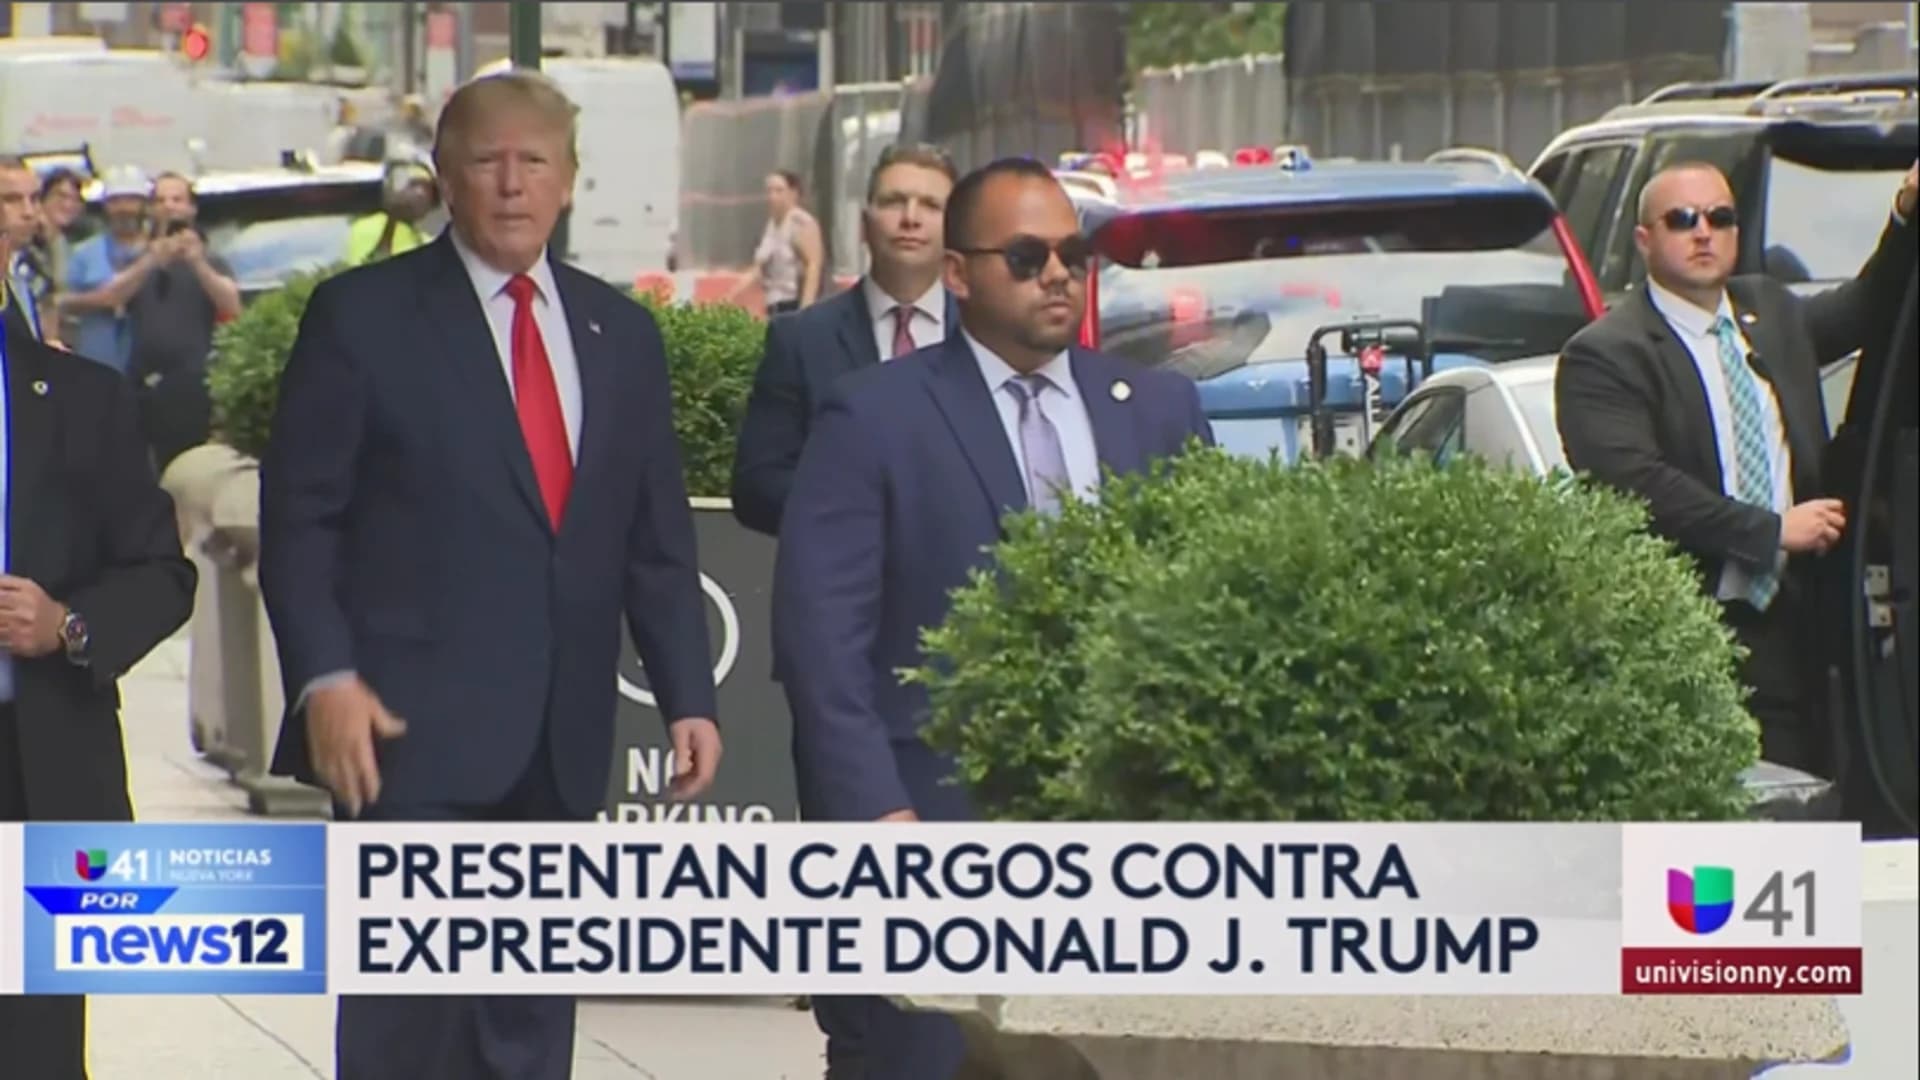 Univision 41 News Brief: Presentan cargos contra expresidente Donald J. Trump